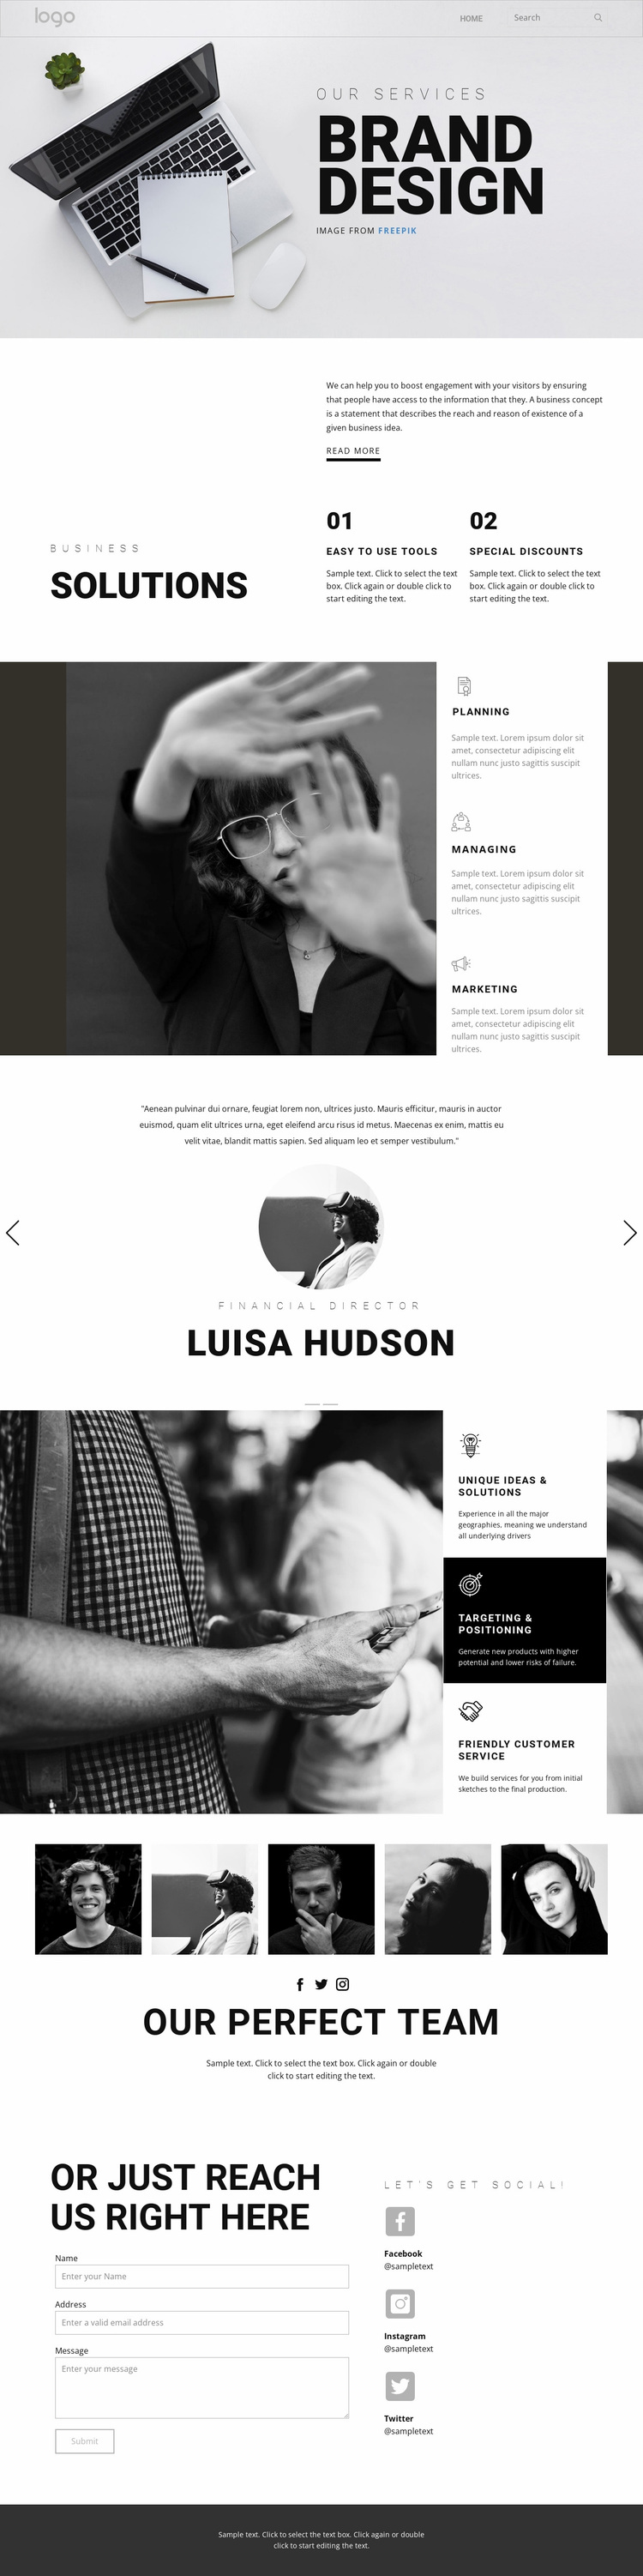 Doing branding for business Website Design